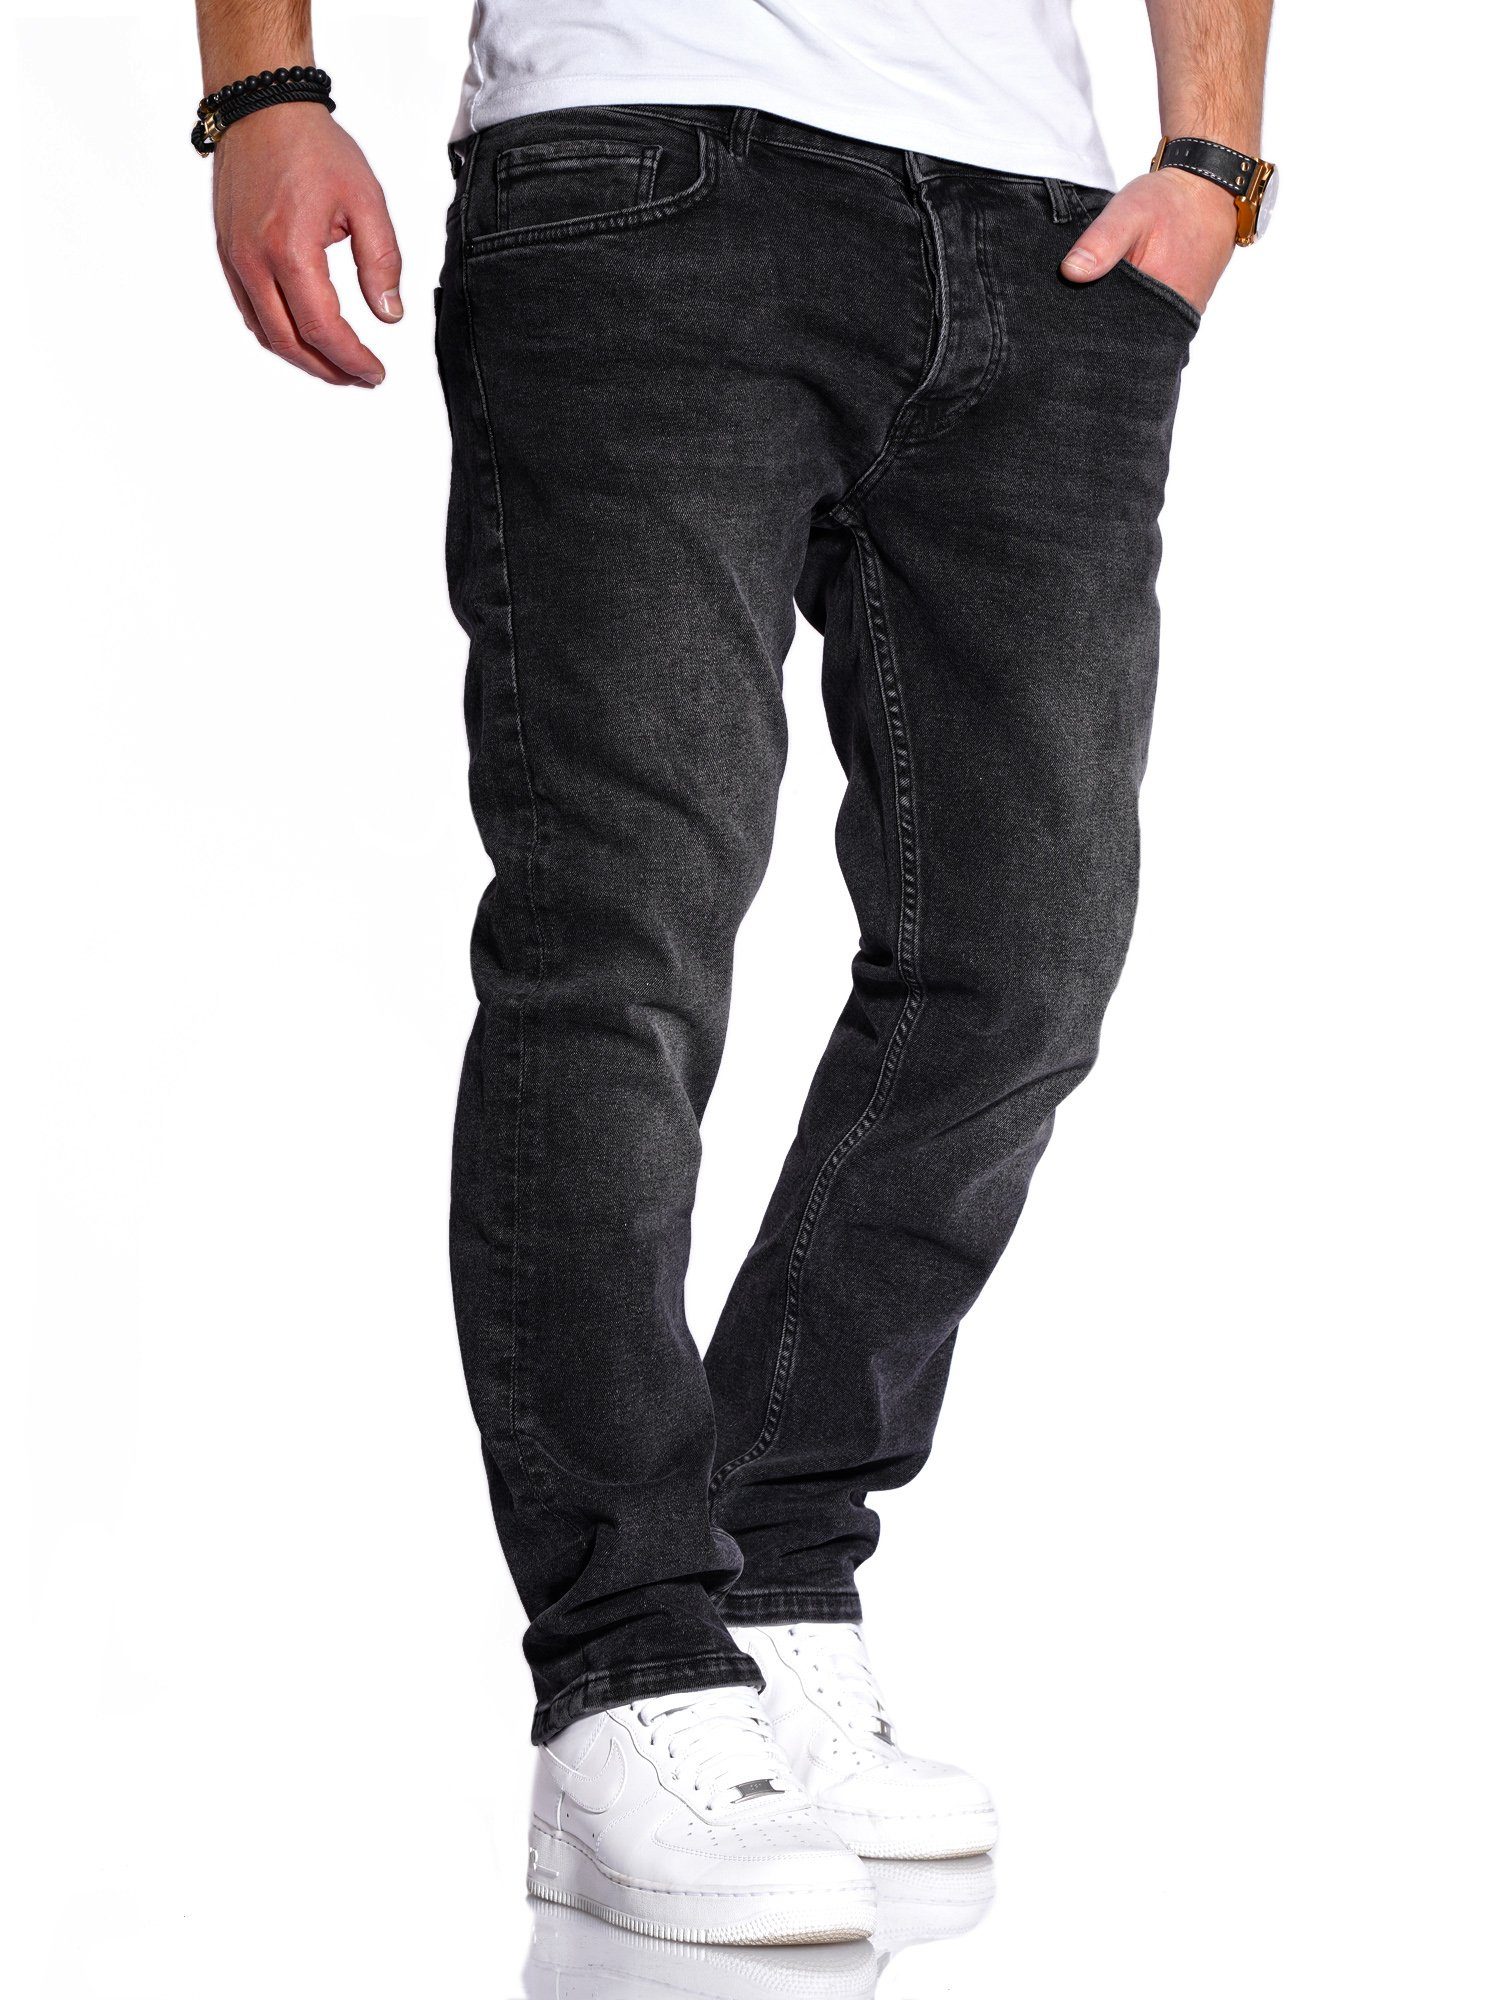 Herren Jeans in schwarz online kaufen | OTTO